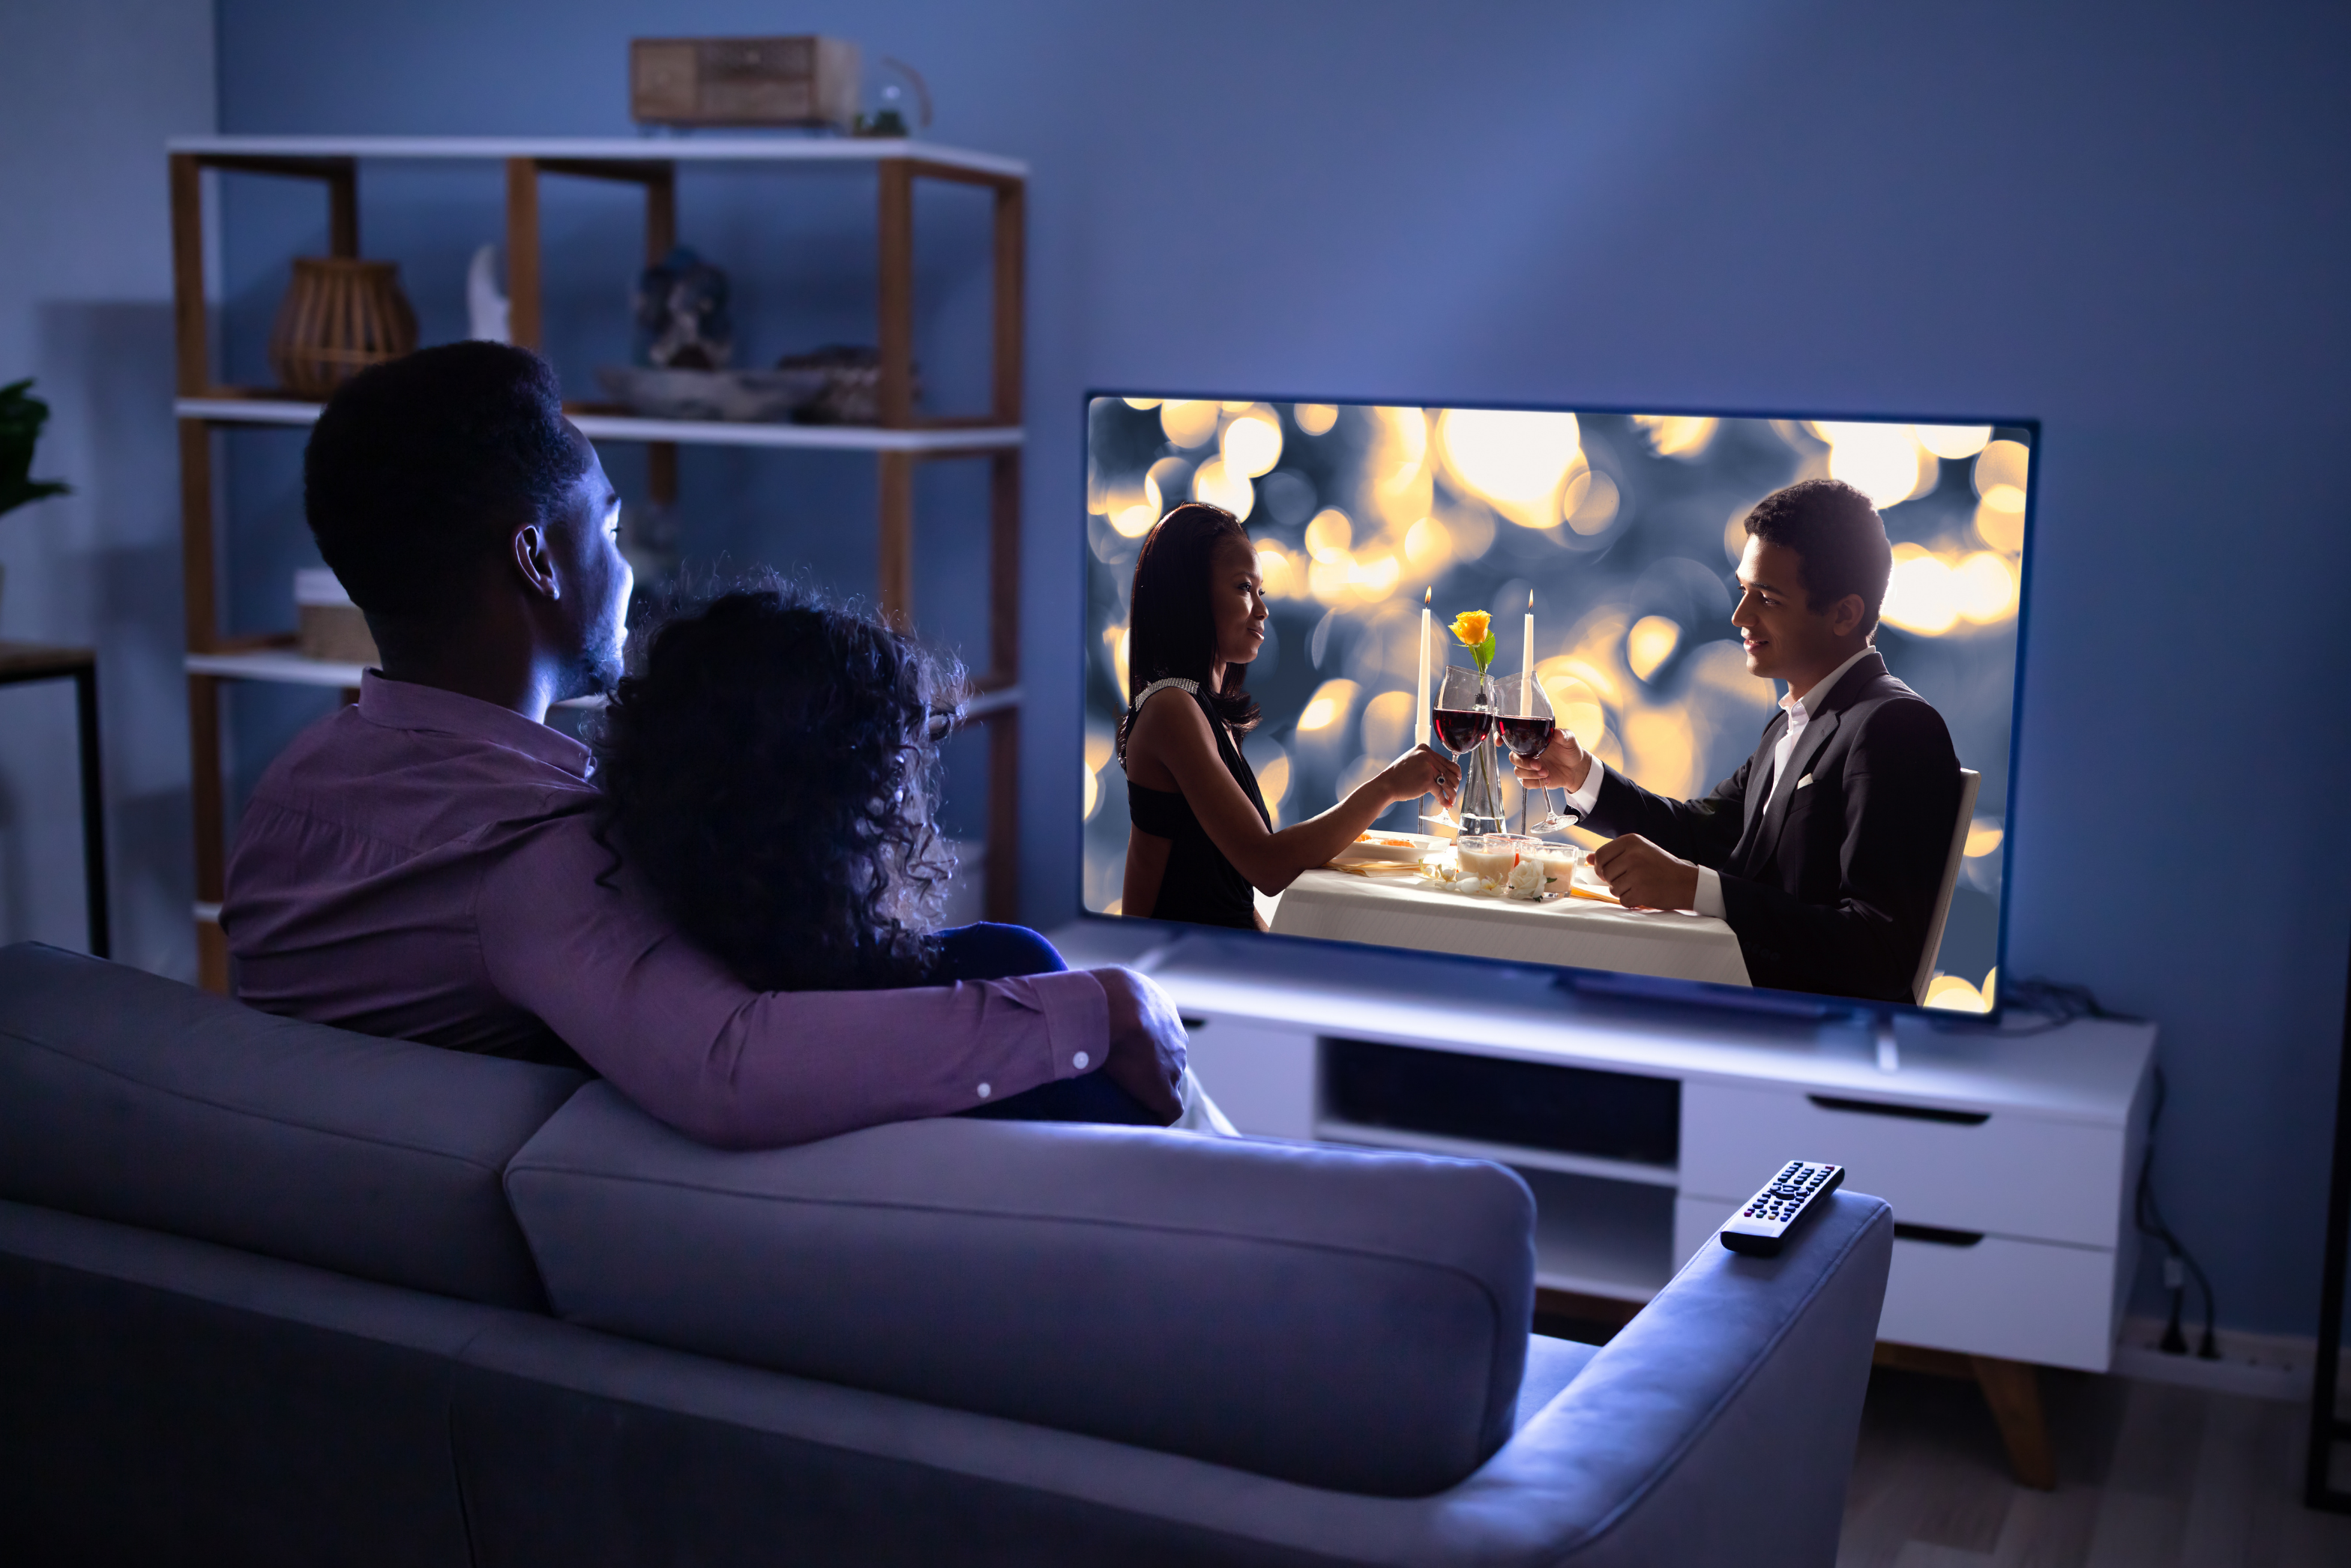 Czy wiesz, co to jest Smart TV? Poznaj najczęściej doceniane zalety Smart TV